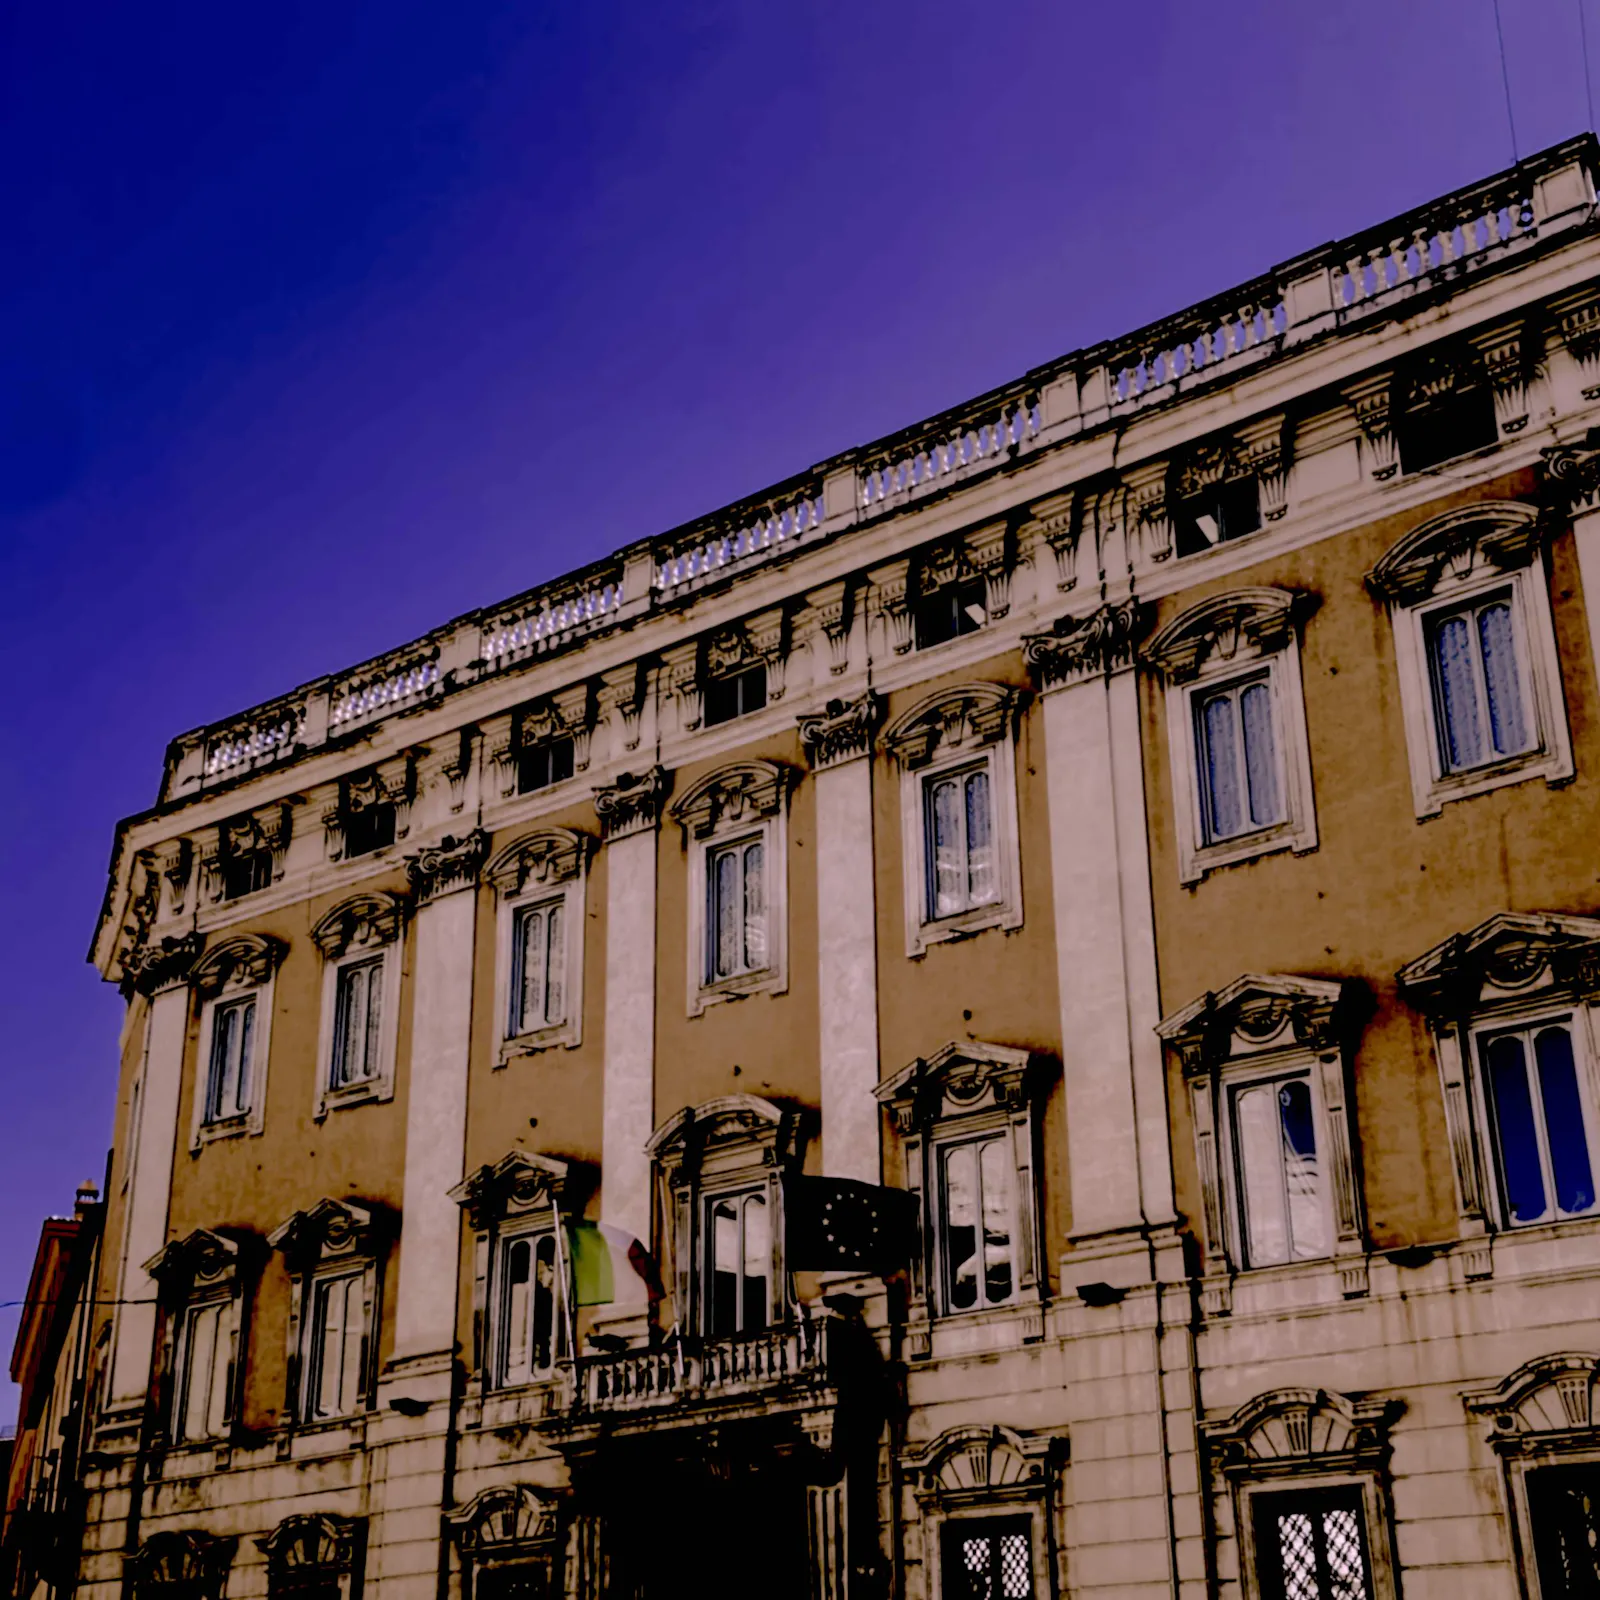 Der Palazzo Cenci-Bolognetti an der Piazza del Gesù in Rom, das Gebäude mit der ehemaligen Parteizentrale der früheren Partei Democrazia Cristiana (DC), der jahrzehntelang mächtigsten Kraft der Politik Italiens.